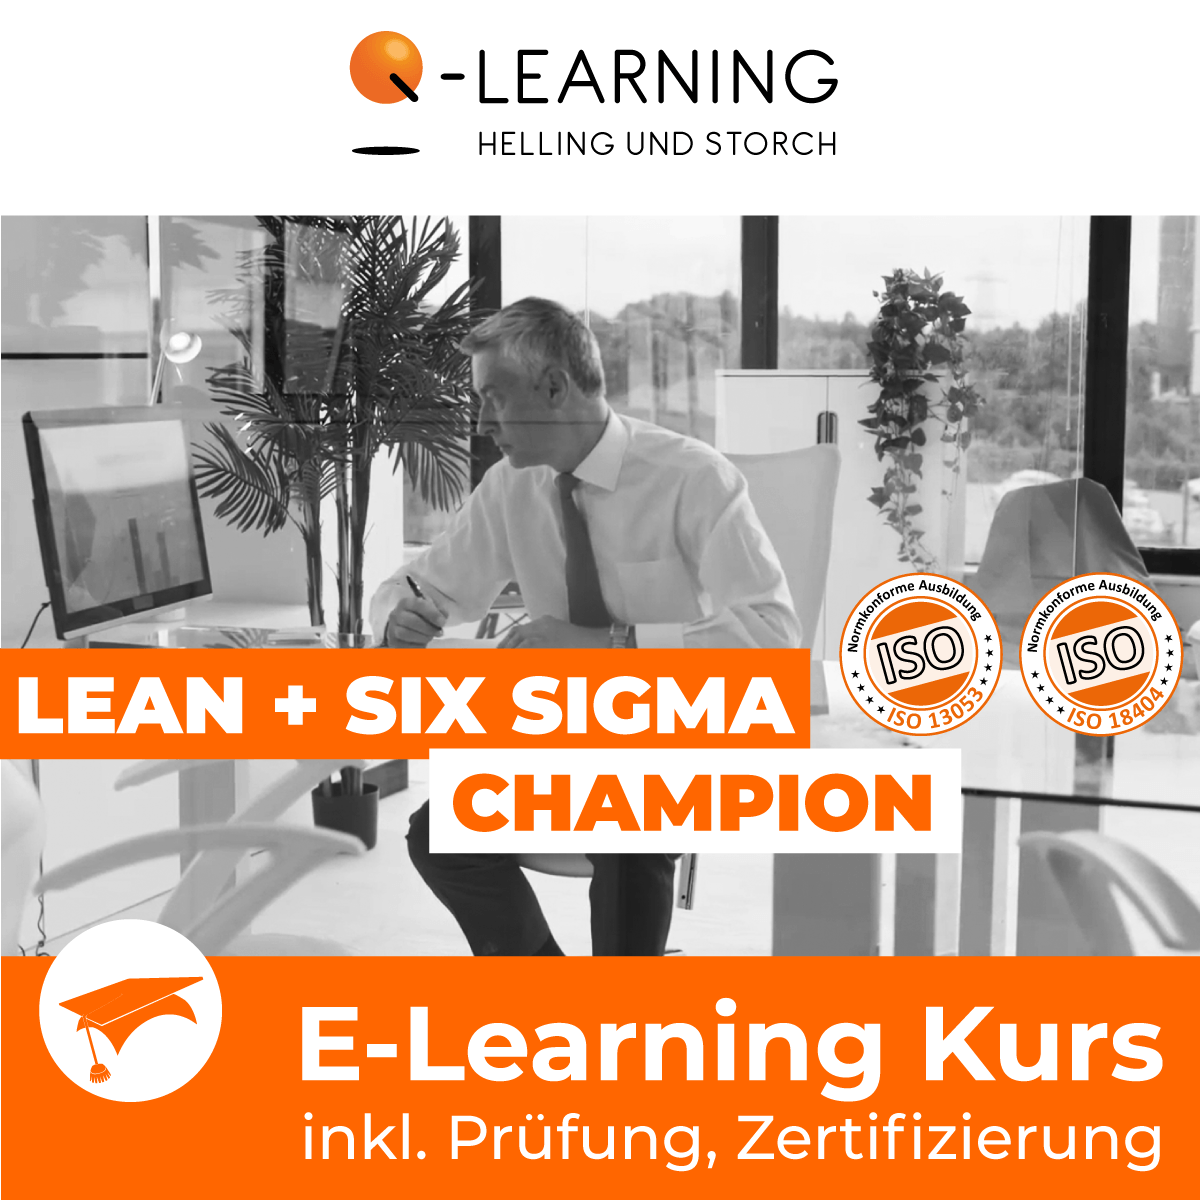 LEAN + SIX SIGMA CHAMPION E-Learning